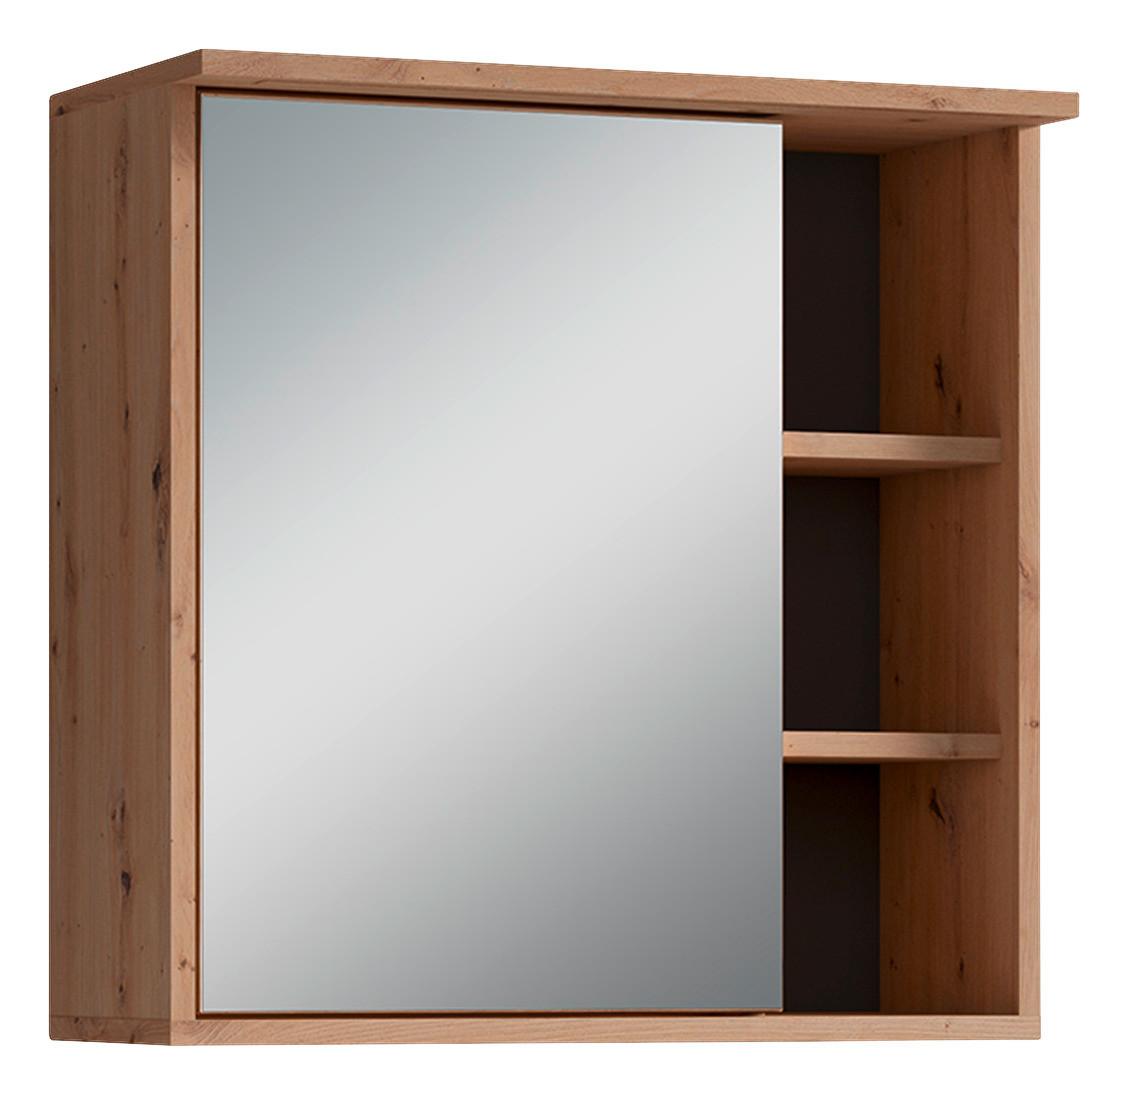 Spiegelschrank Wellness Mit Led 1 Tür BxHxT 60x61x28 cm - Anthrazit/Eiche Artisan, MODERN, Glas/Holzwerkstoff (60/61/28cm) - MID.YOU